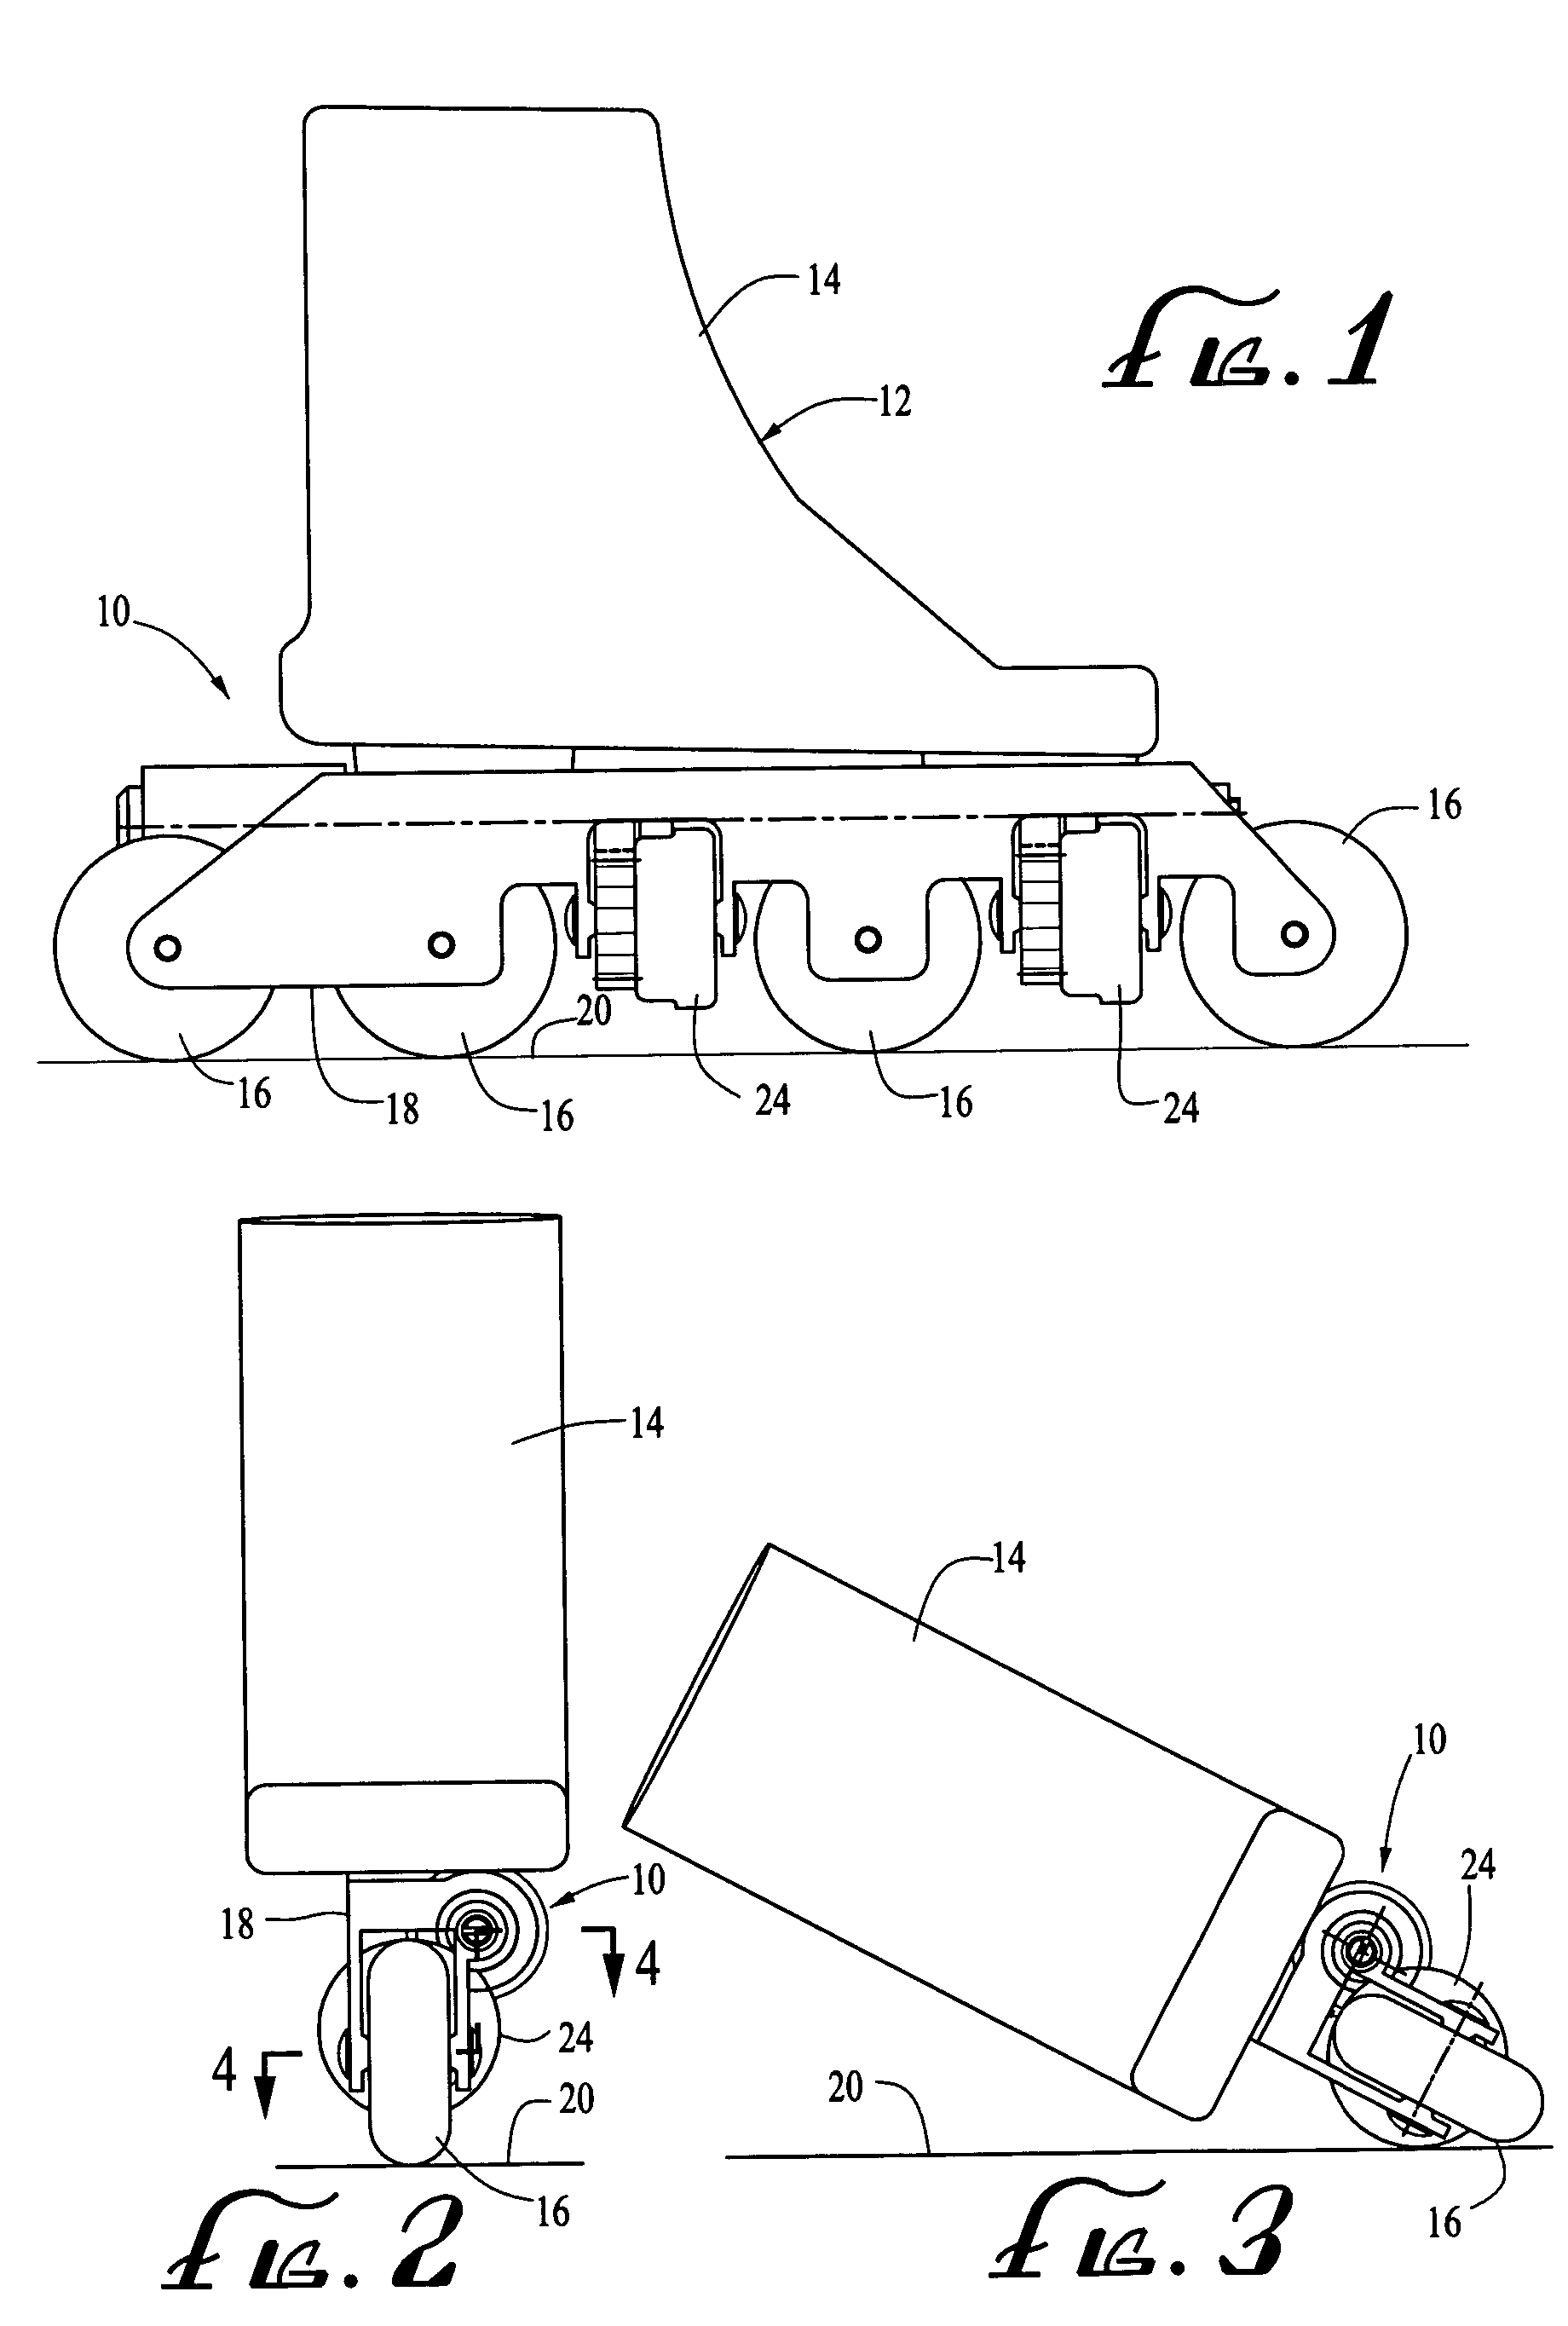 In-line roller skate braking mechanism